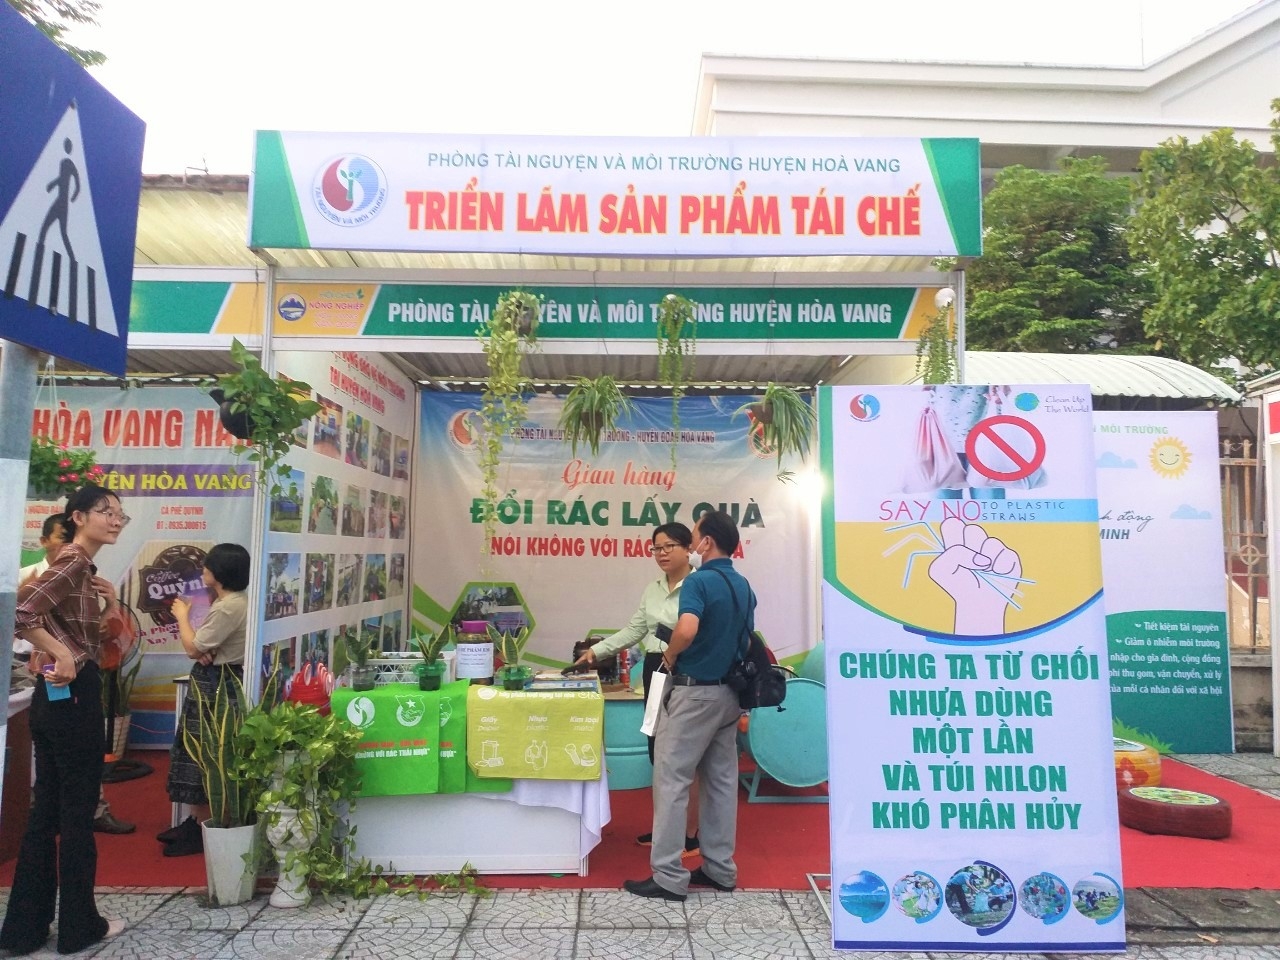 Phòng TN&MT huyện Hòa Vang tổ chức nhiều hoạt động về bảo vệ môi trường nhằm tuyên truyền, hưởng ứng người dân cùng tham gia, góp phần nâng cao ý thức, phát huy vai trò của cộng đồng trong công tác giữ gìn, bảo vệ môi trường.